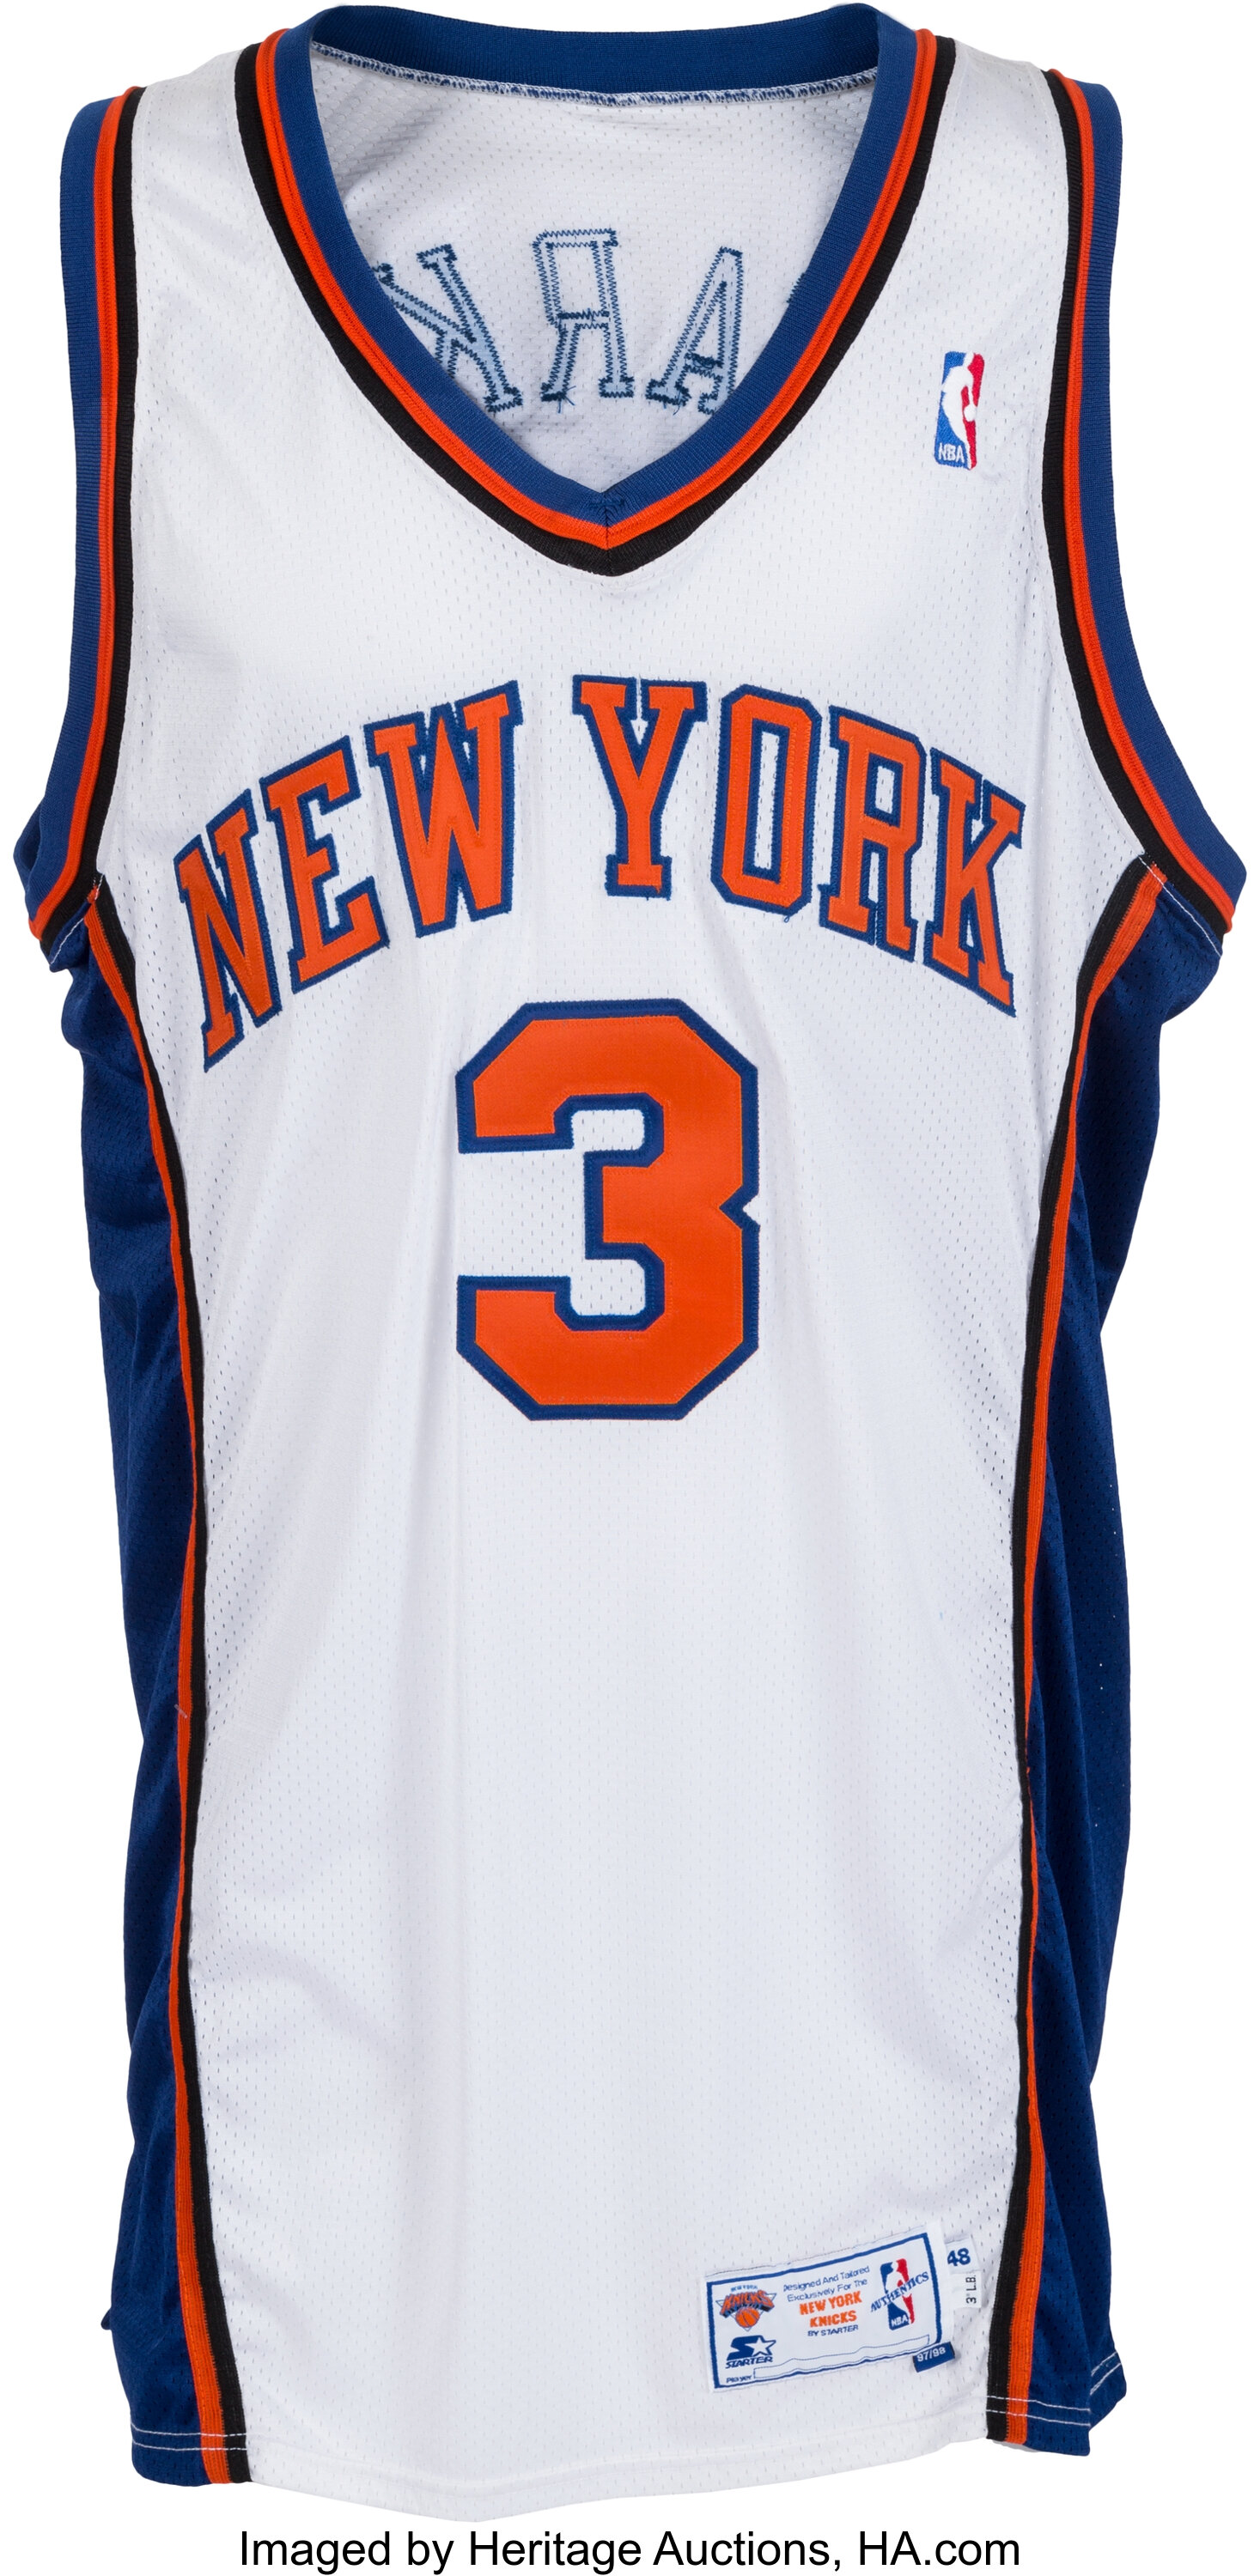 John Starks Signed New York White Basketball Jersey (JSA)